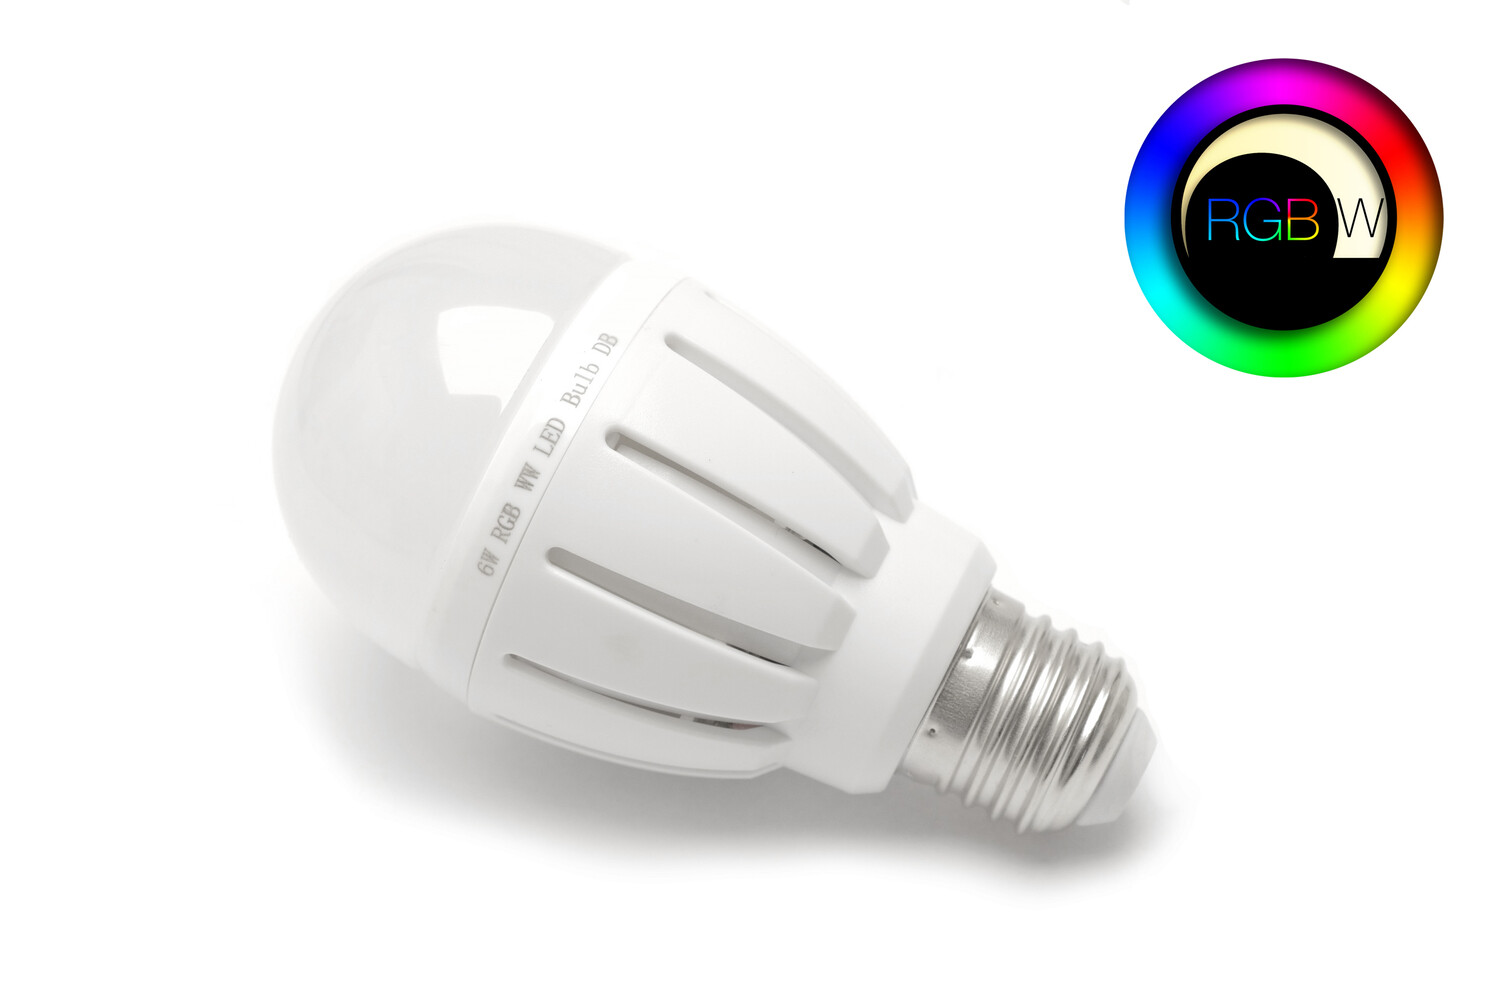 Hochwertiges Leuchtmittel von LED Universum. RGBW LED Birne 6 Watt E27 für eine stimmungsvolle Beleuchtung.